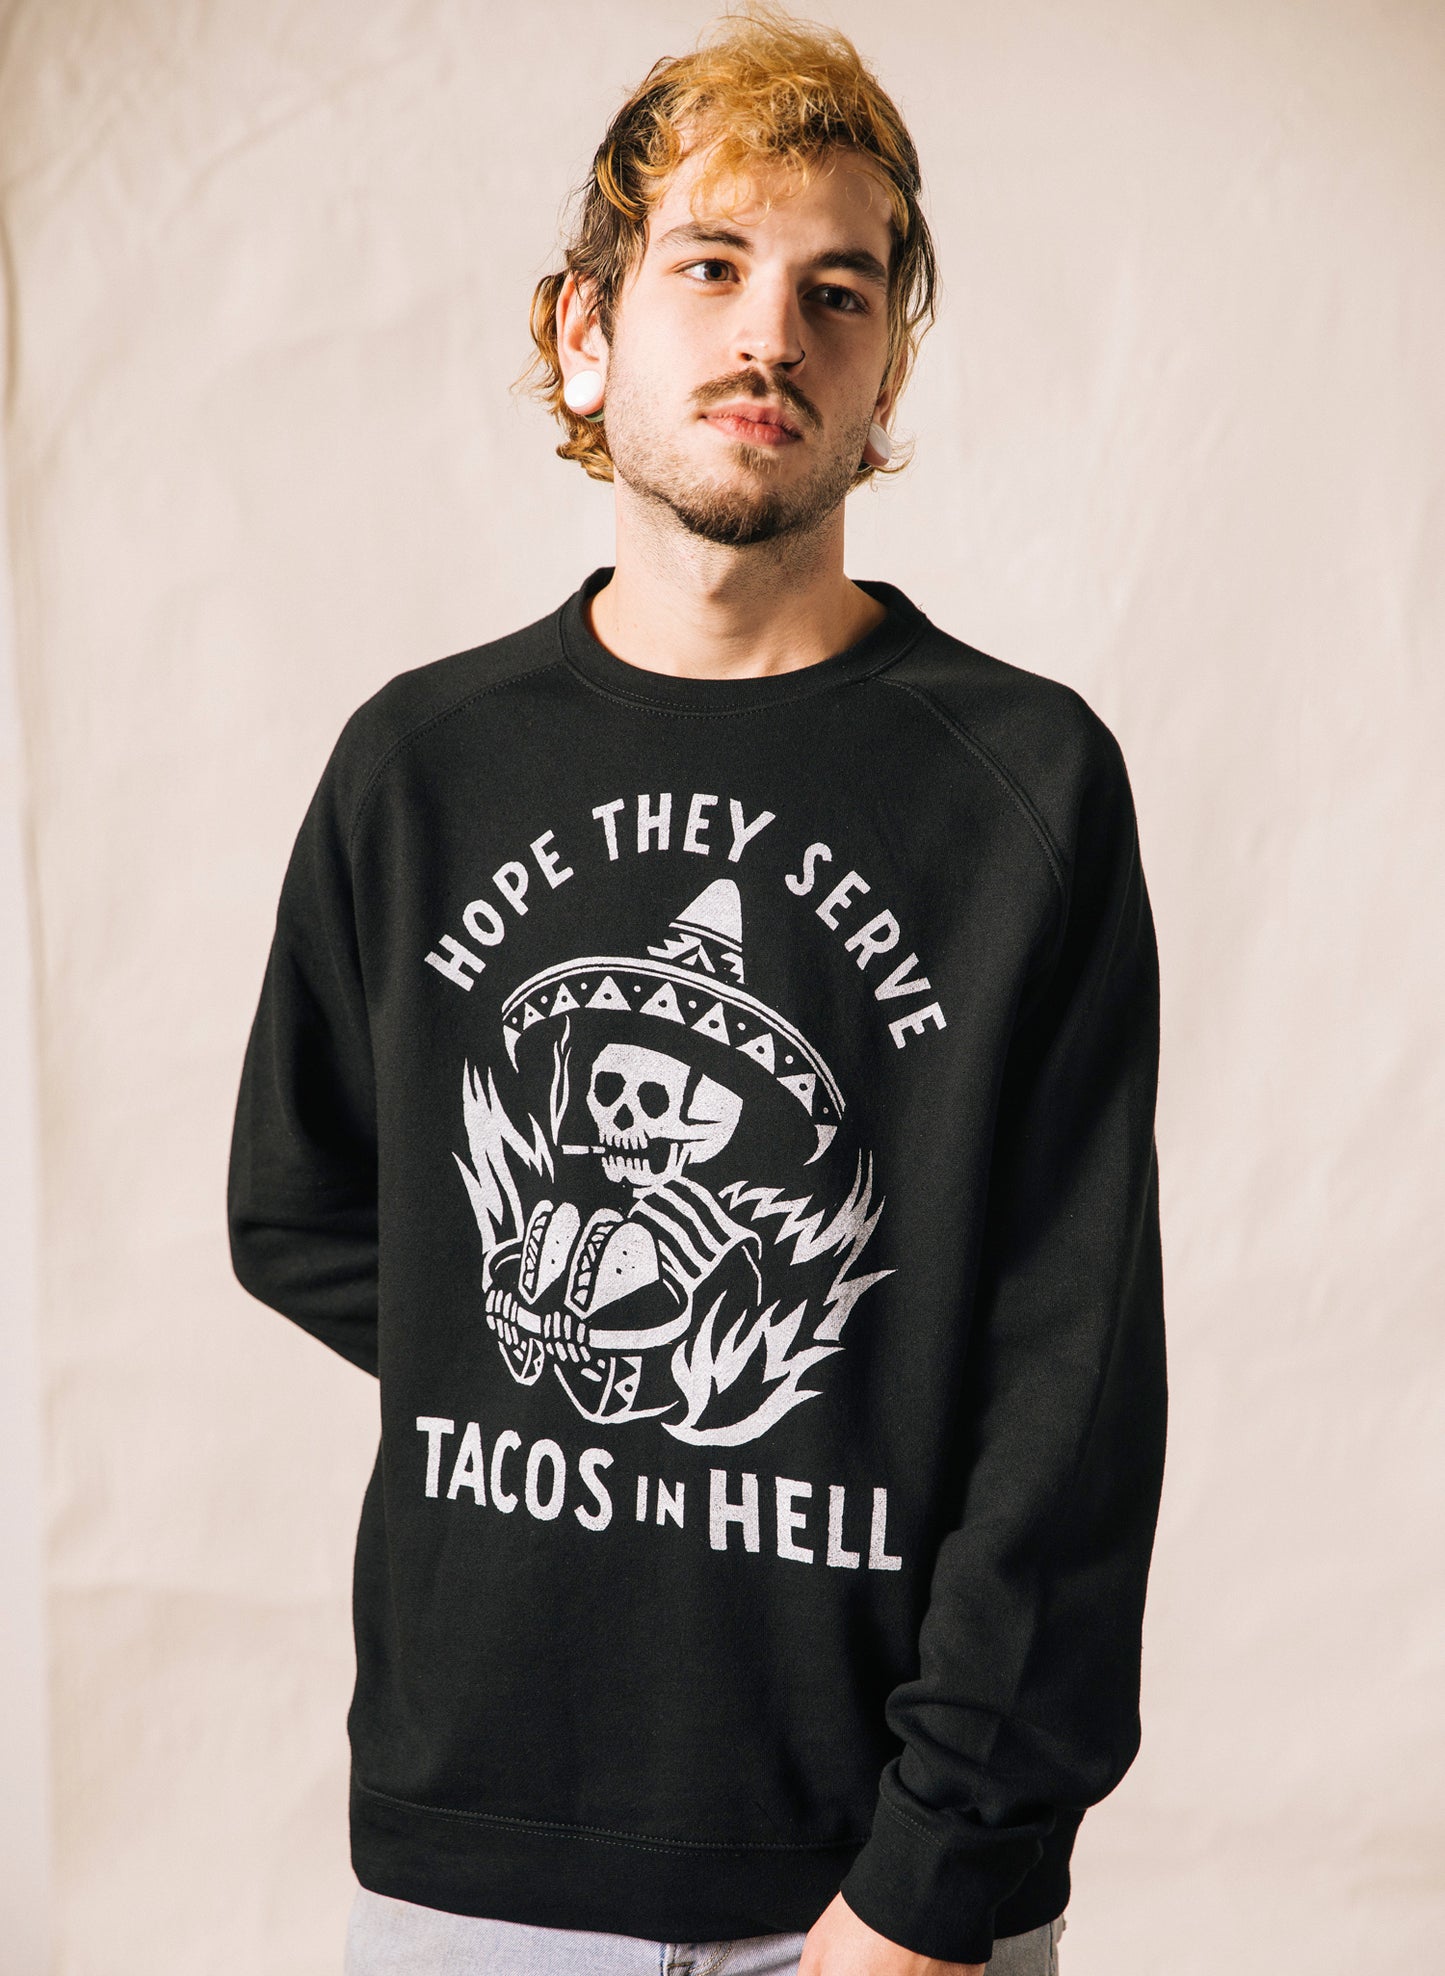 Hope They Serve Tacos in Hell Taco Meme Dia De Los Muertos Austin Texas Taco Crewneck Sweatshirt